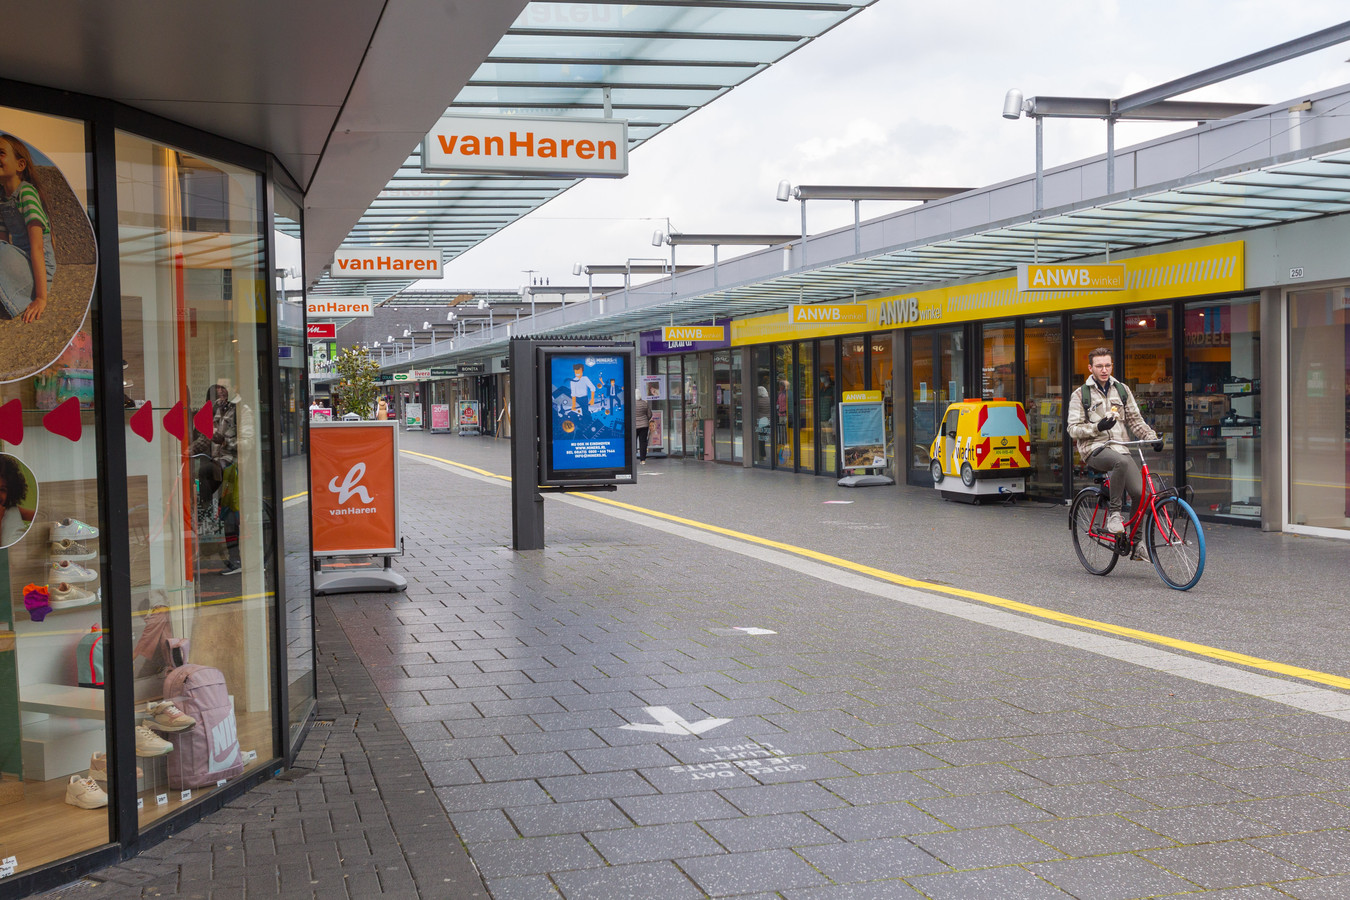 Winkelcentrum Woensel in Eindhoven. Certitudo Captital heeft hier zo'n 36 panden gekocht, met winkels als H&M, Etos, Douglas, Van Haren en ANWB.